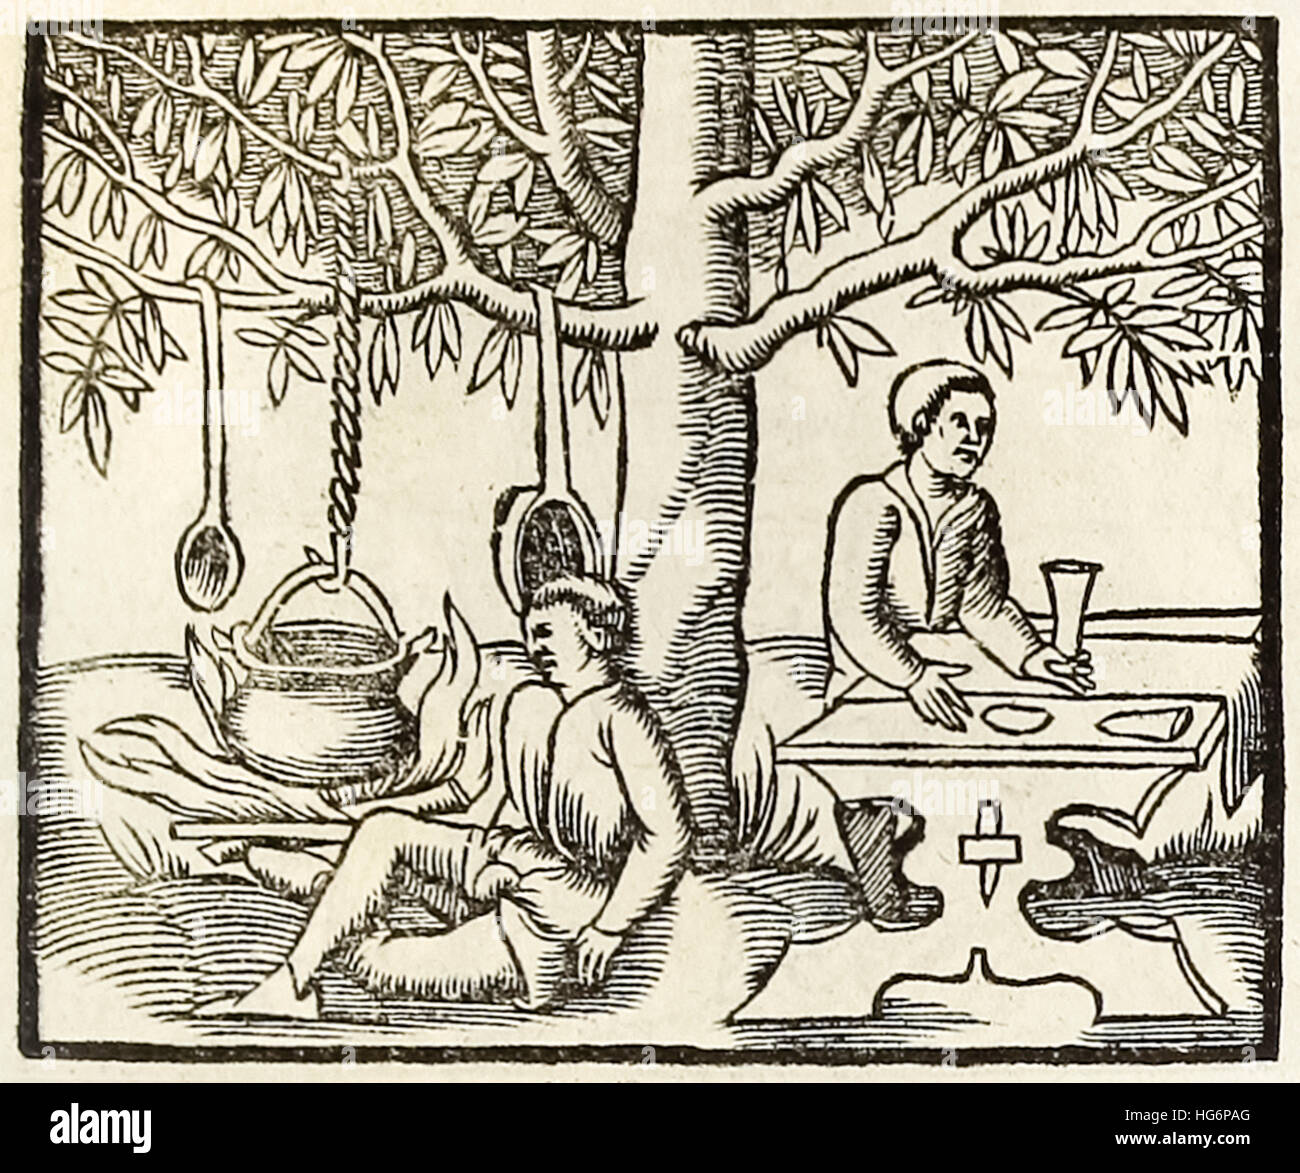 Kochen Topf und warten Diner, Holzschnitt von 1550-Ausgabe der "Cosmographia" von Sebastian Münster (1488-1552). Siehe Beschreibung für mehr Informationen. Stockfoto